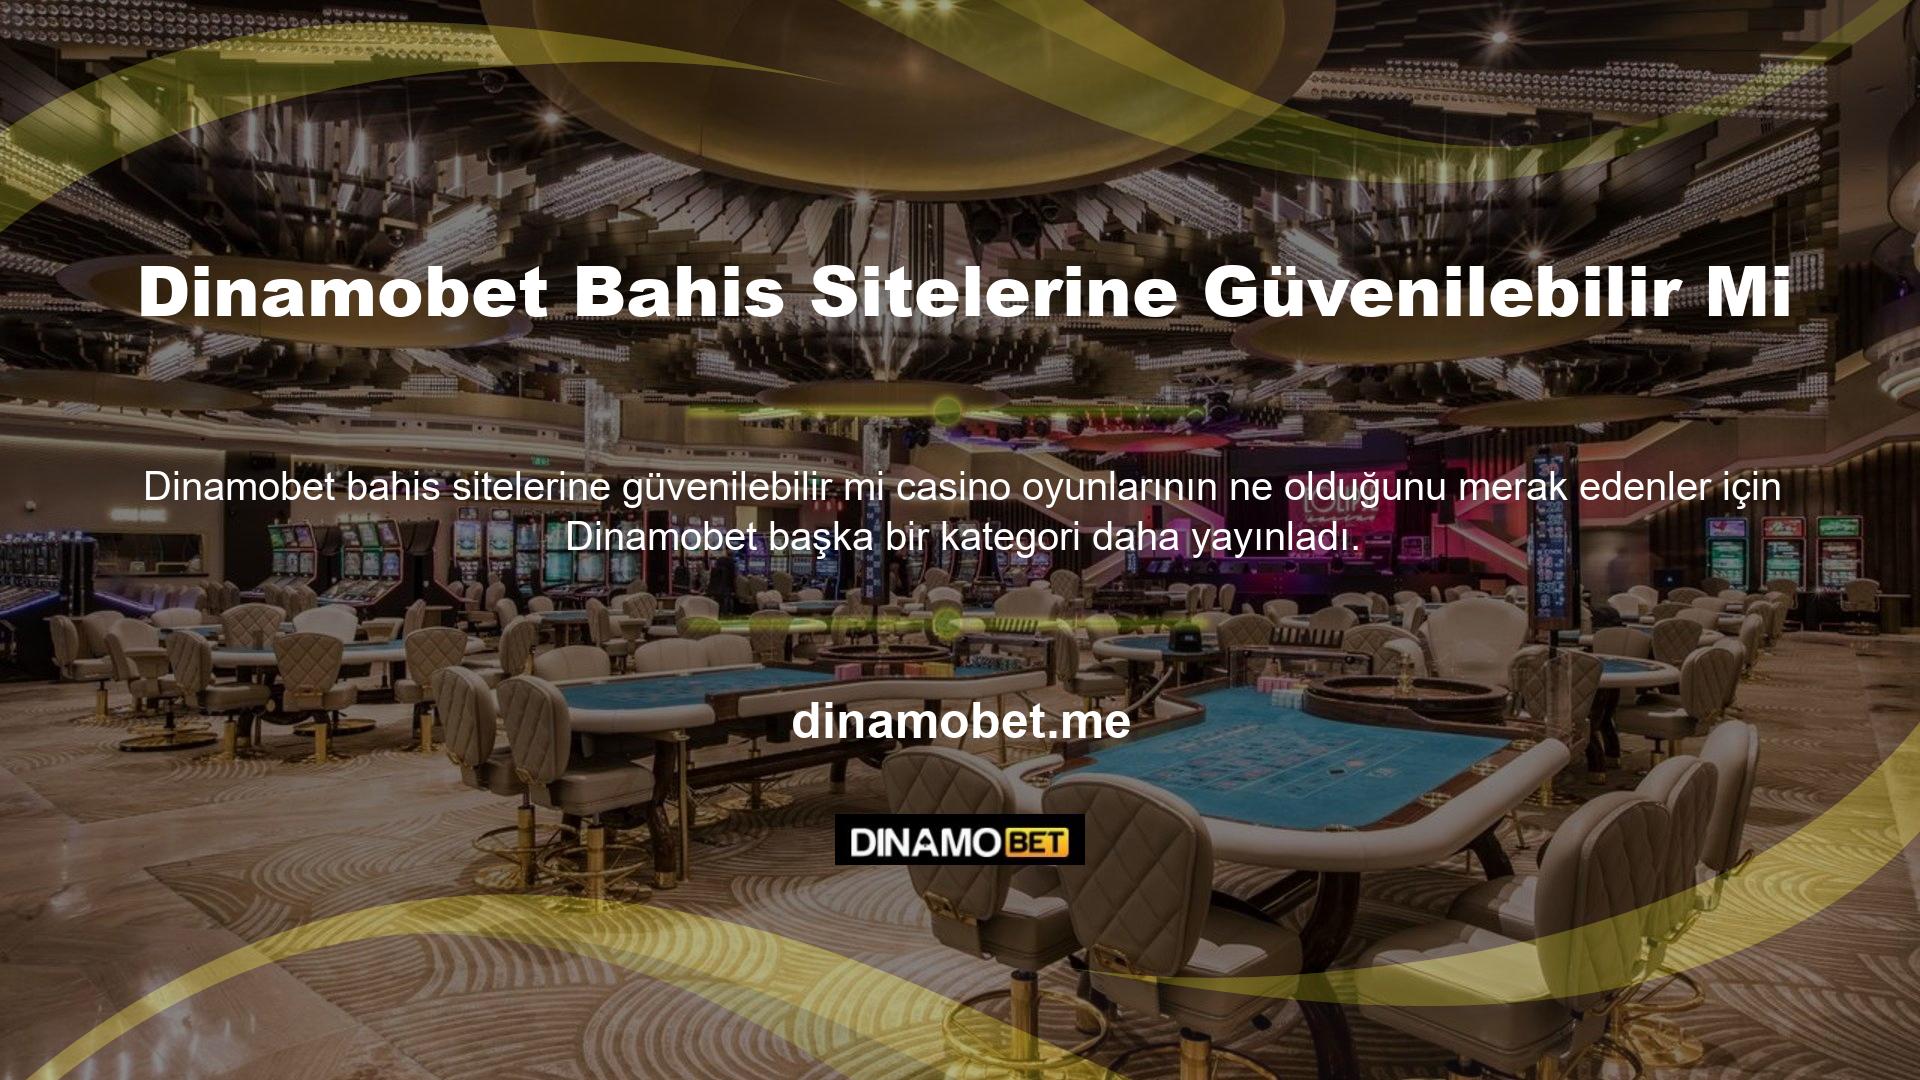 Sitede en karlı casino türlerini barındıran platformlar arasında Bingo, Rulet, Poker, Blackjack, Slots ve Baccarat gibi stiller yer alıyor